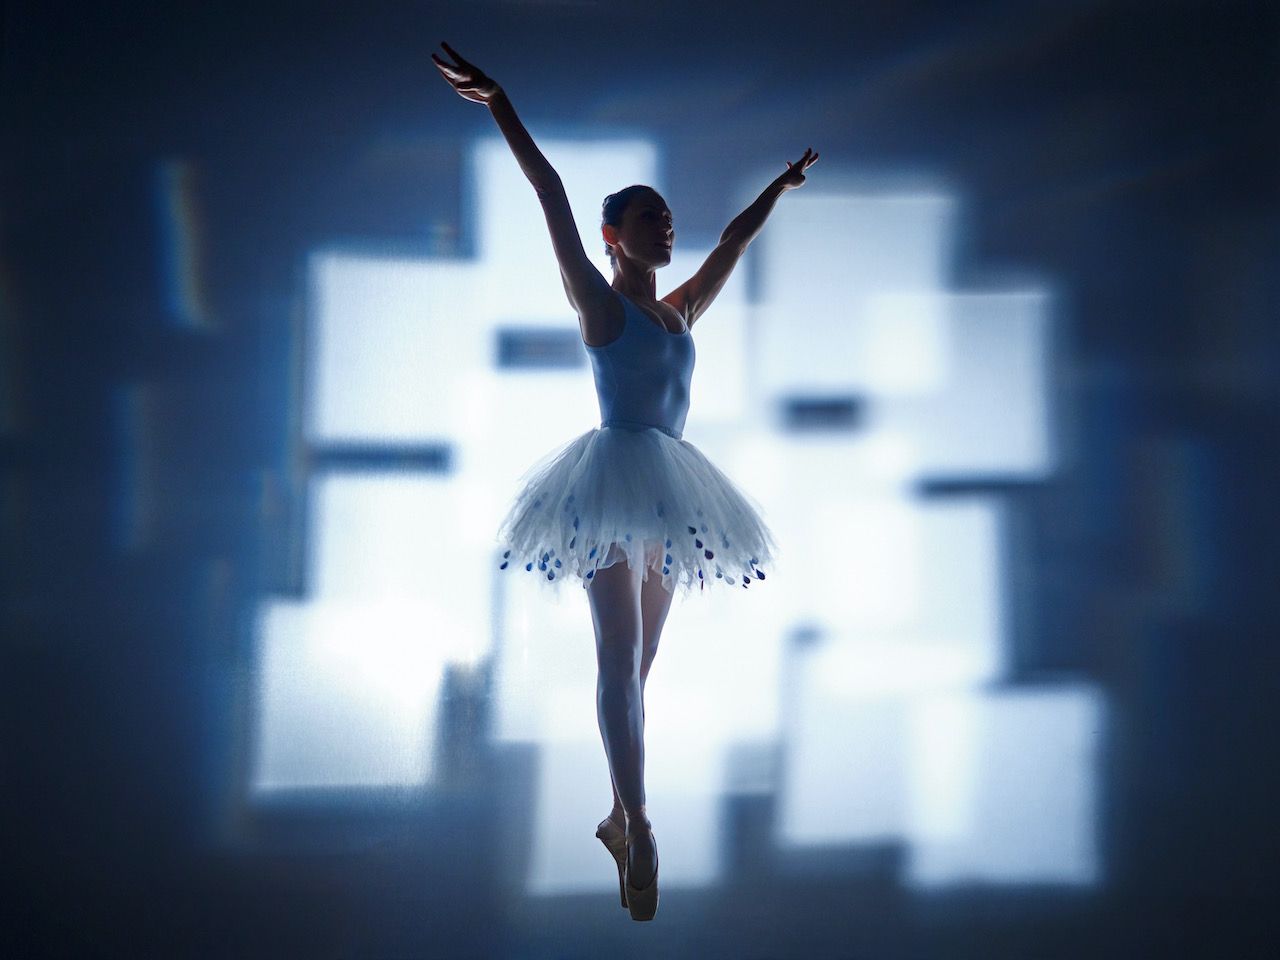 Michael Haegele fotografia astratta silhouette di ballerina in tutù con quadrati luminosi sovrapposti sullo sfondo